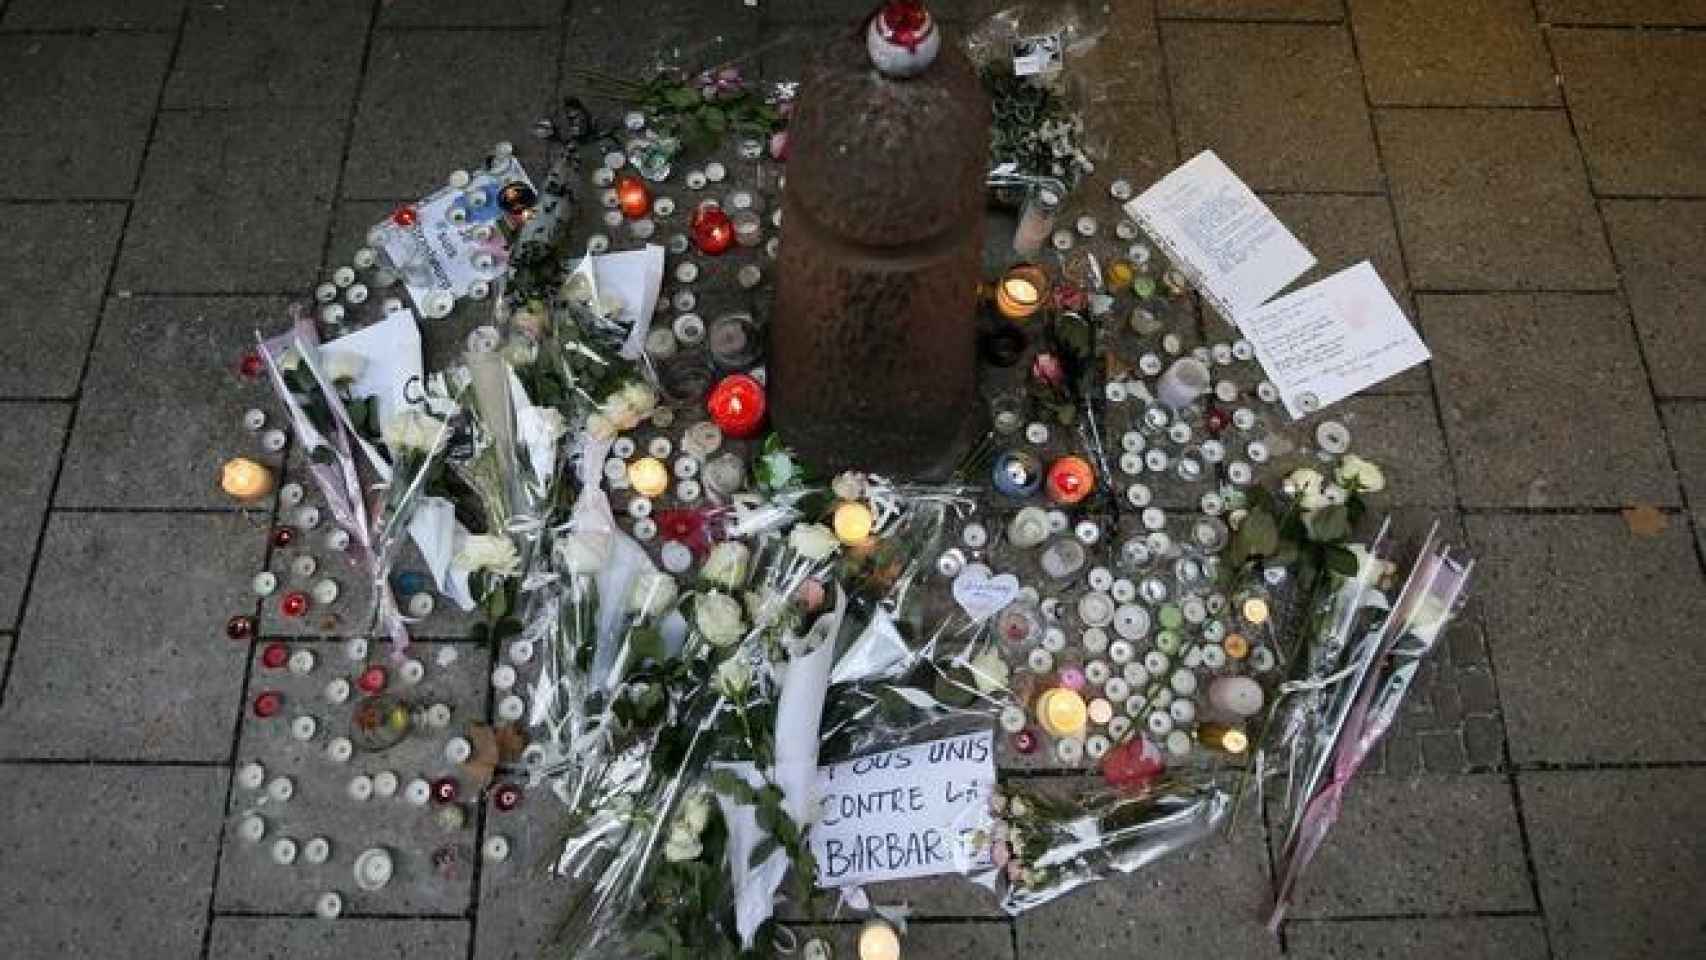 Flores, velas y mensajes en un altar improvisado cerca del mercadillo de Estrasburgo.